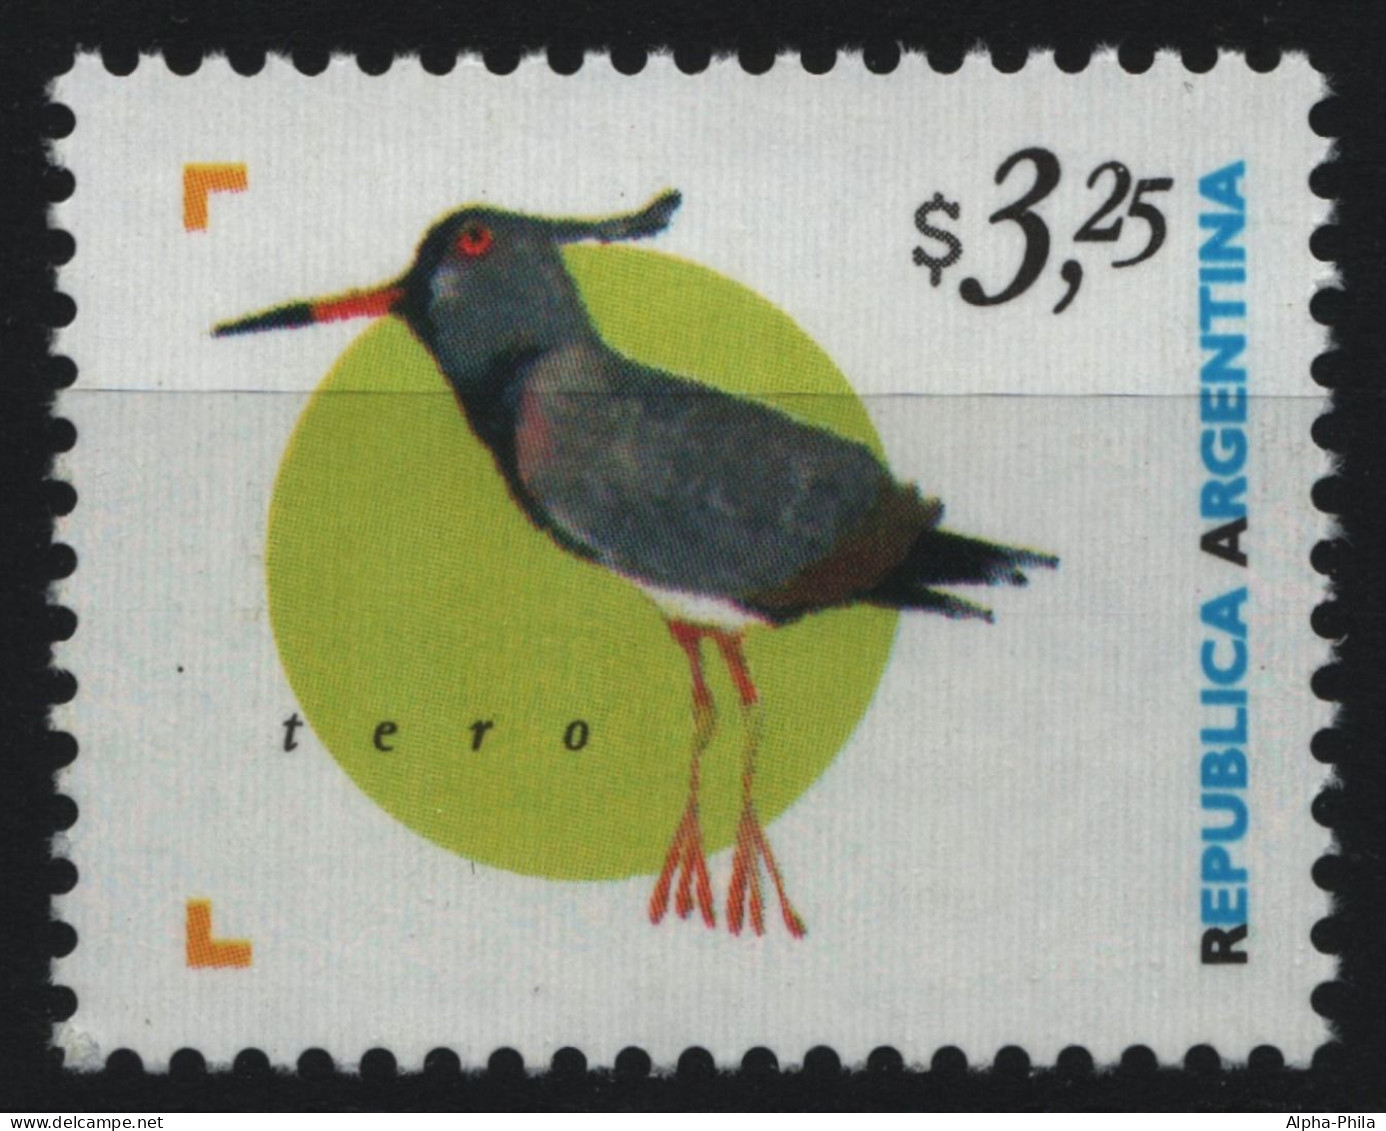 Argentinien 1998 - Mi-Nr. 2419 ** - MNH - Vögel / Birds - Nuevos